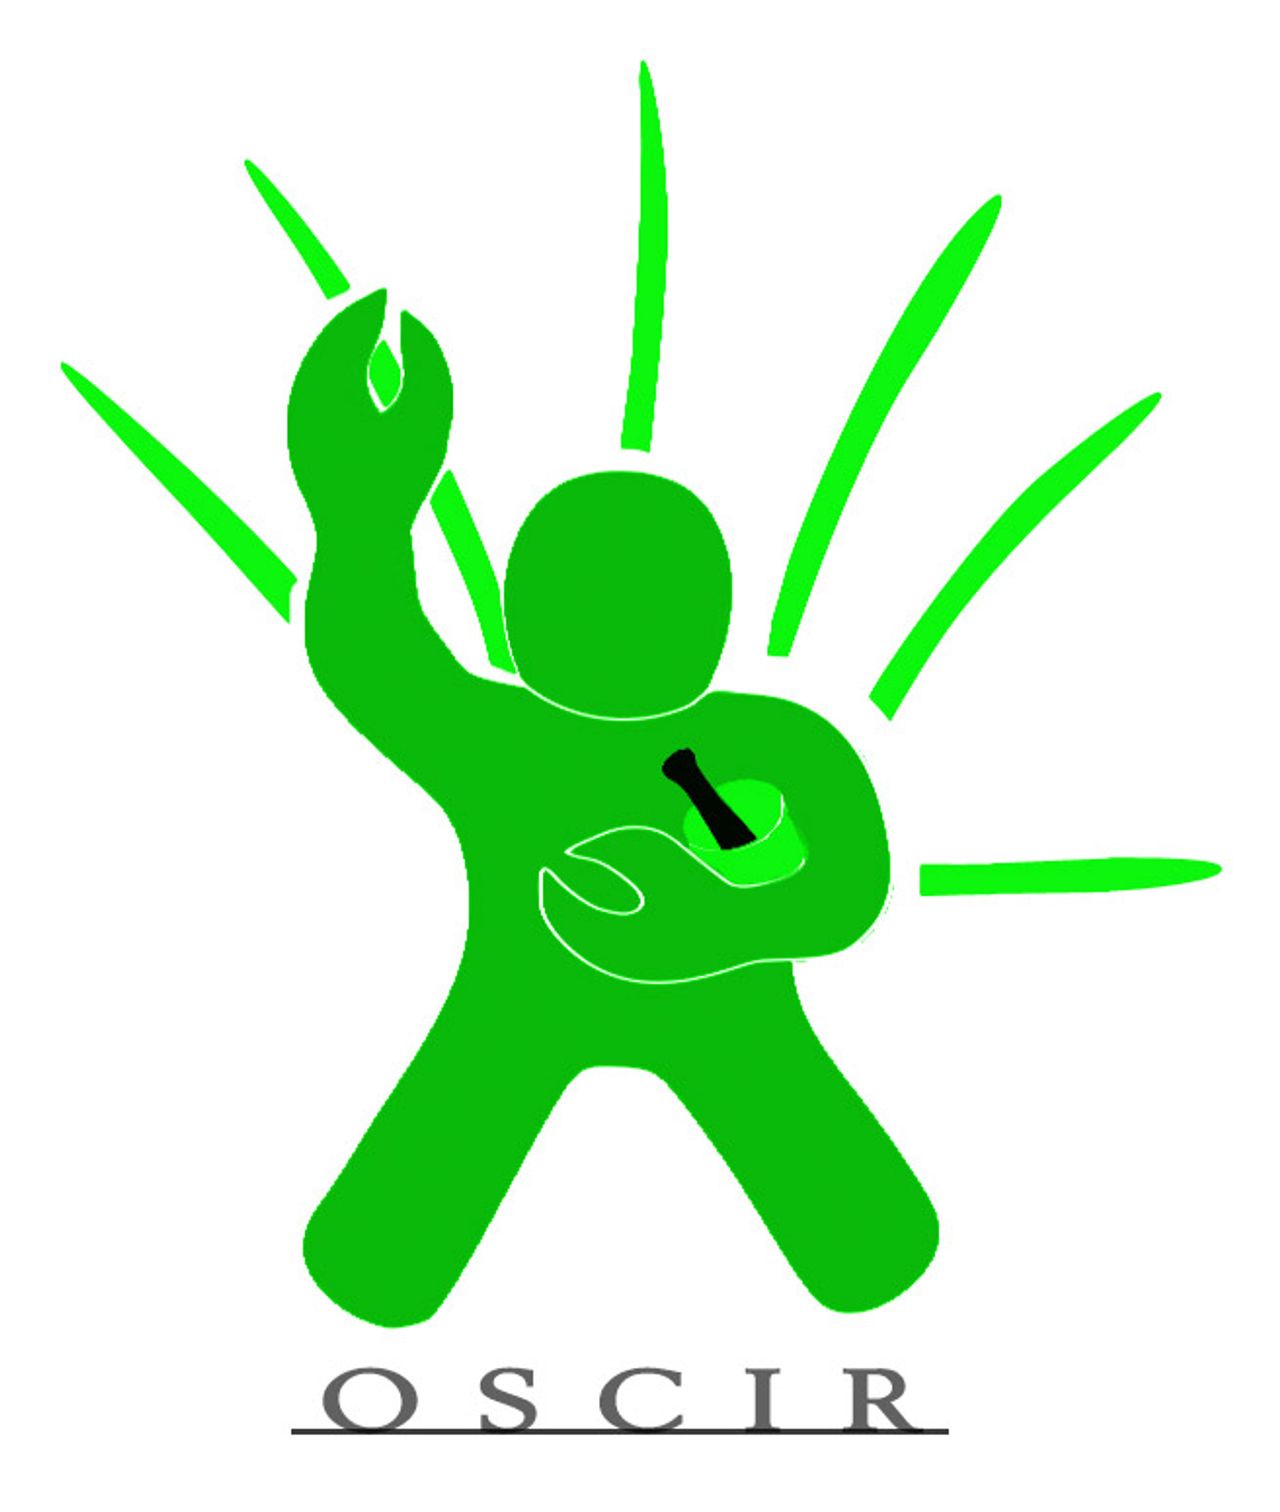 OSCIR logo